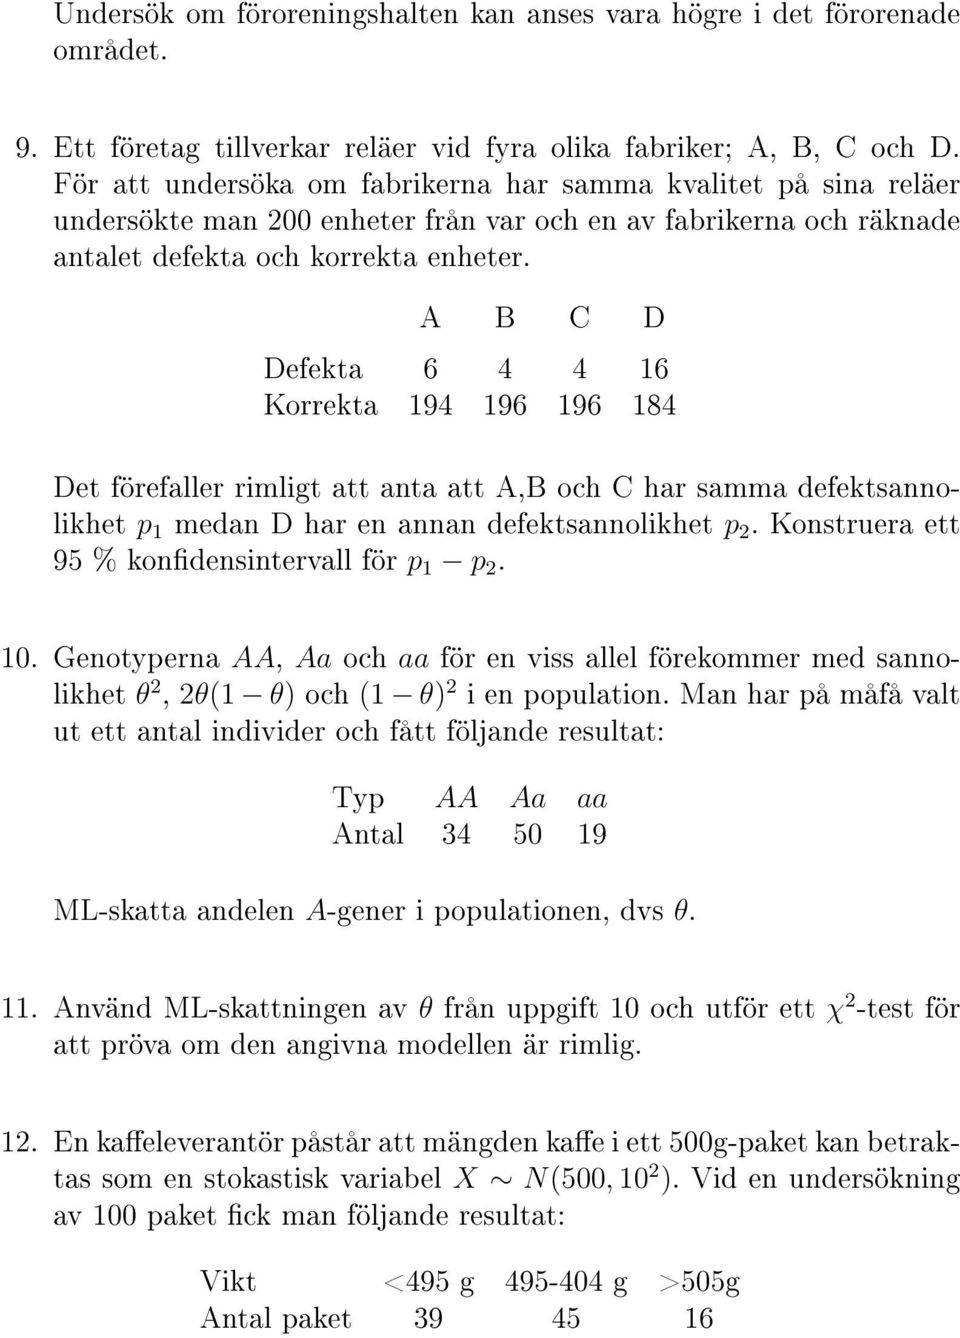 A B C D Defekta 6 4 4 16 Korrekta 194 196 196 184 Det förefaller rimligt att anta att A,B och C har samma defektsannolikhet p 1 medan D har en annan defektsannolikhet p 2.